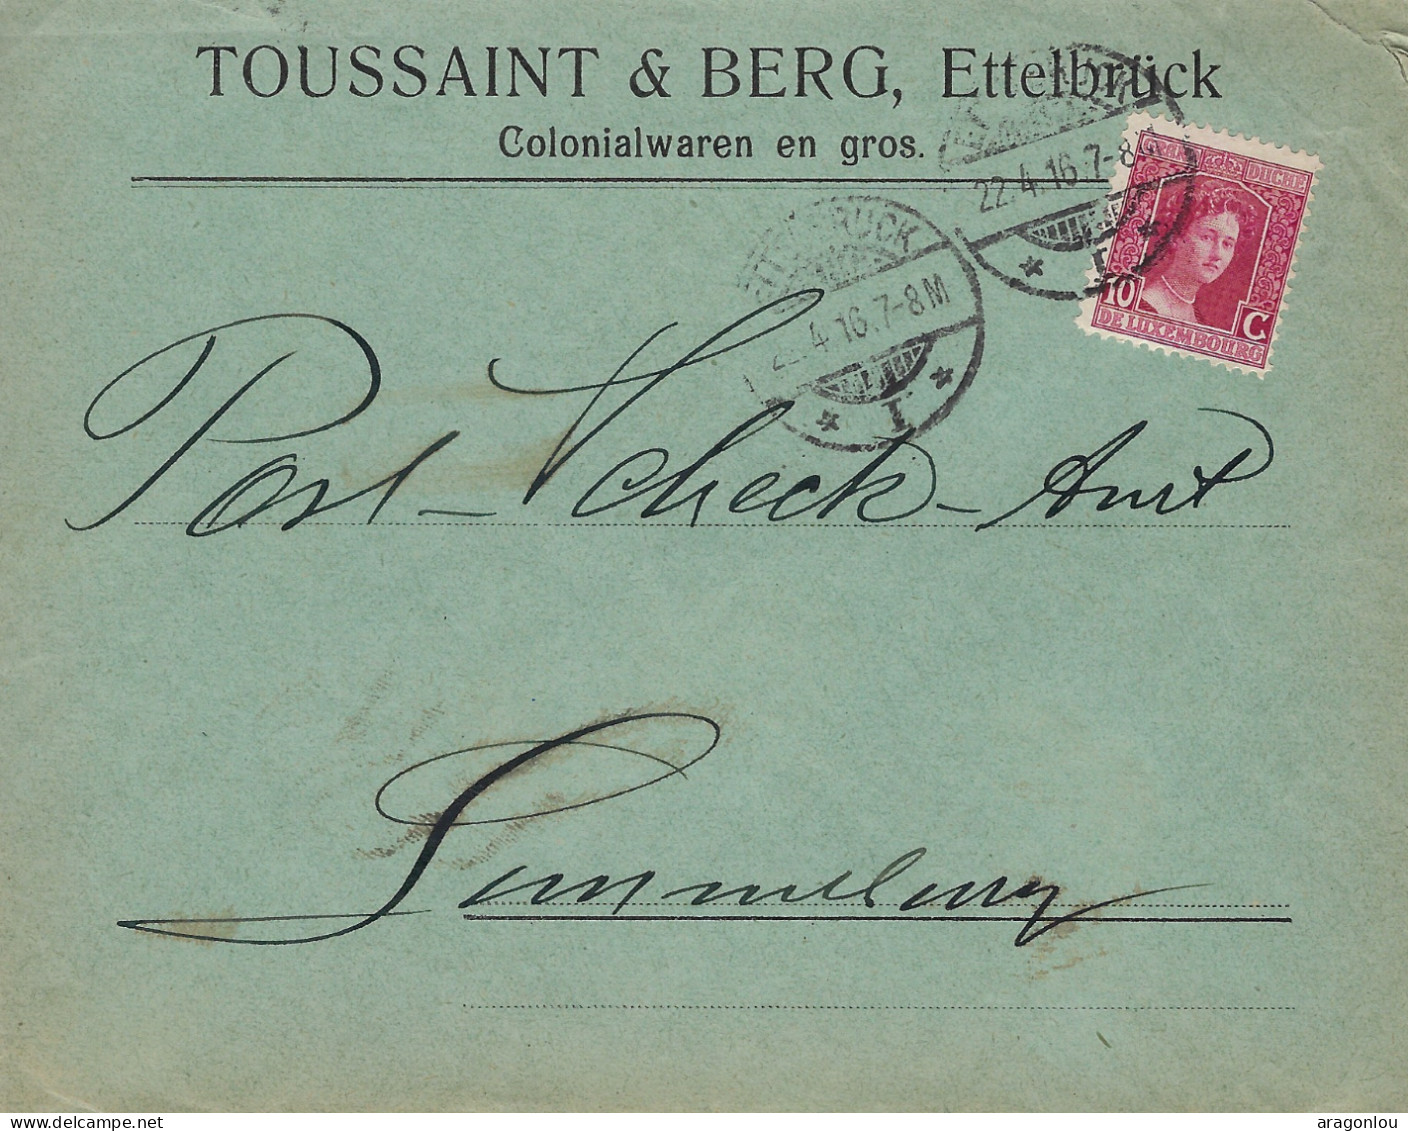 Luxembourg - Luxemburg - Lettre  1916  An Das Post -Scheck-Amt , Luxembourg- Cachet Luxembourg - Storia Postale